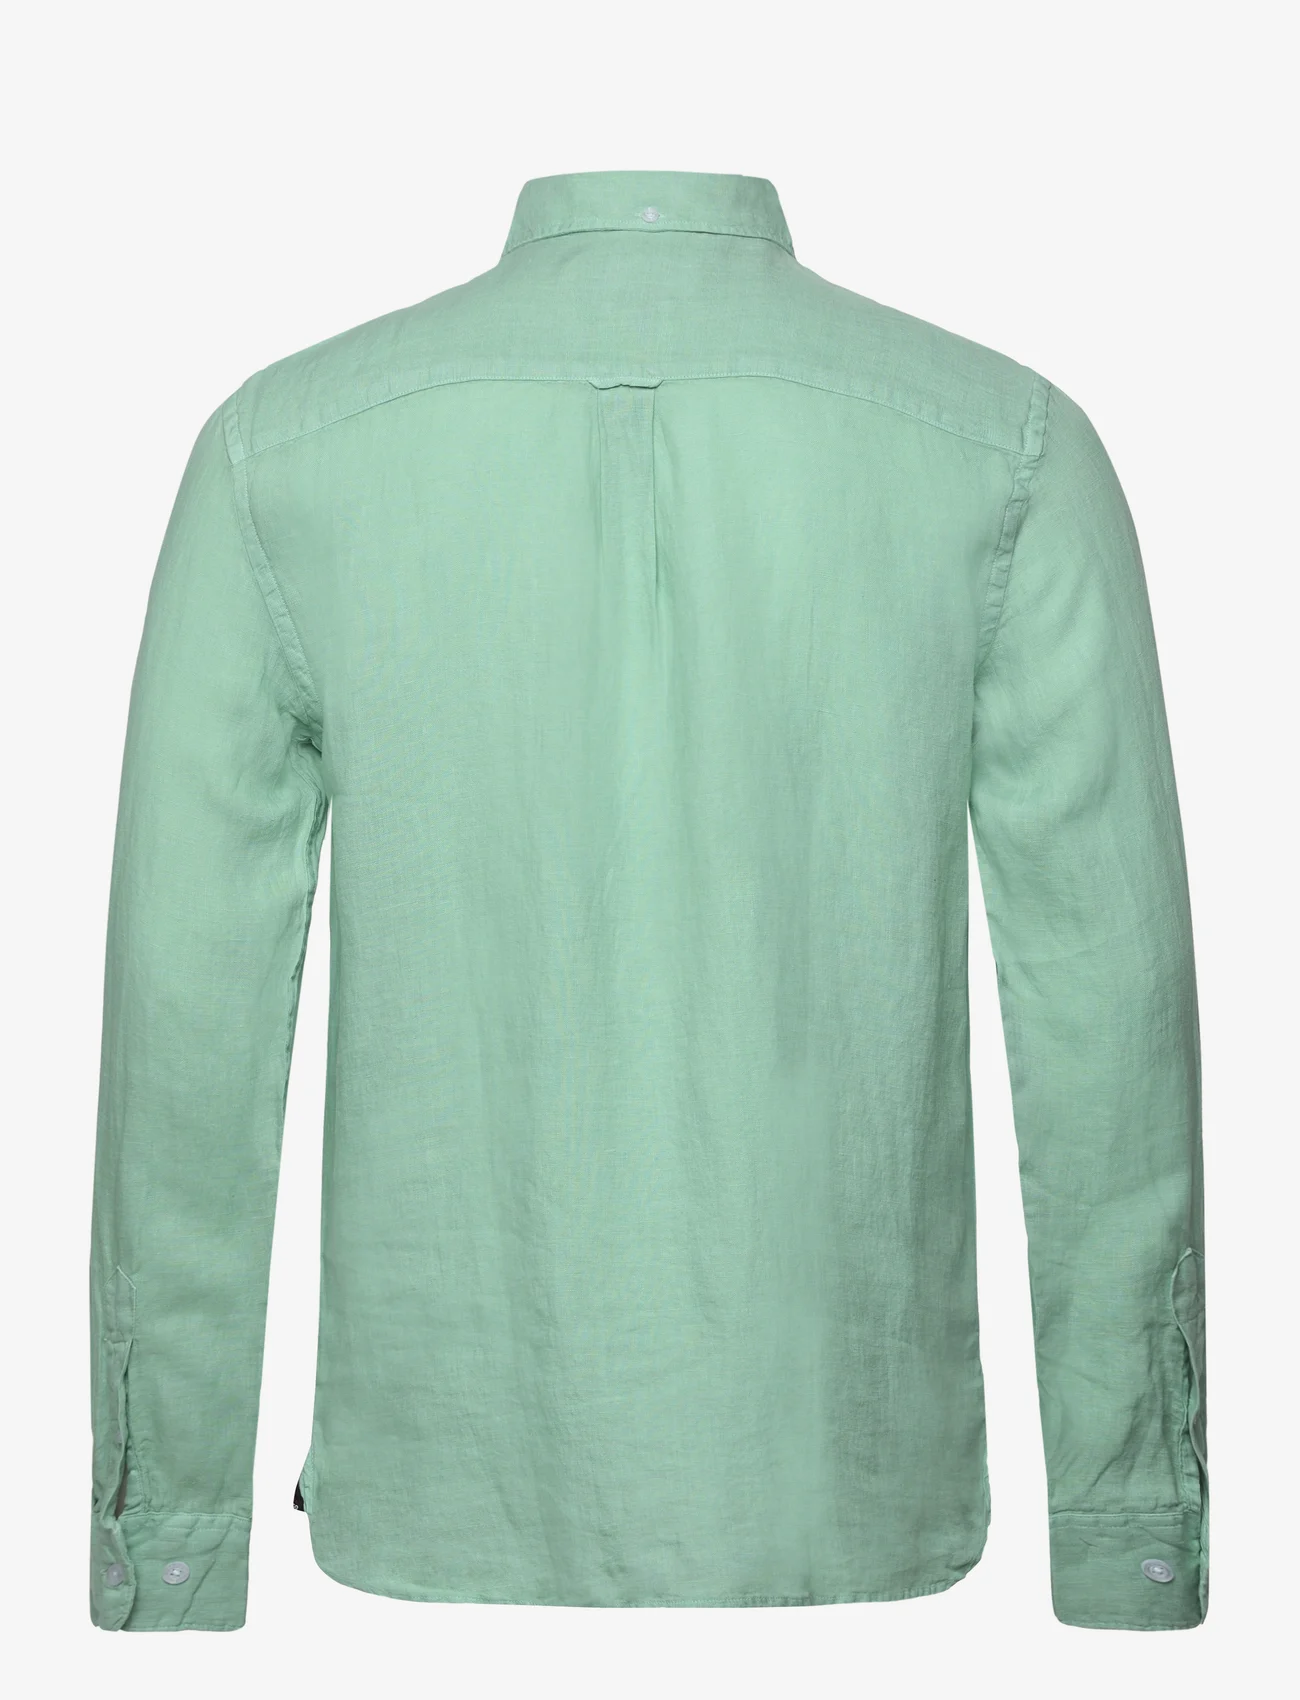 Sebago - Linen Shirt - linnen overhemden - mint - 1